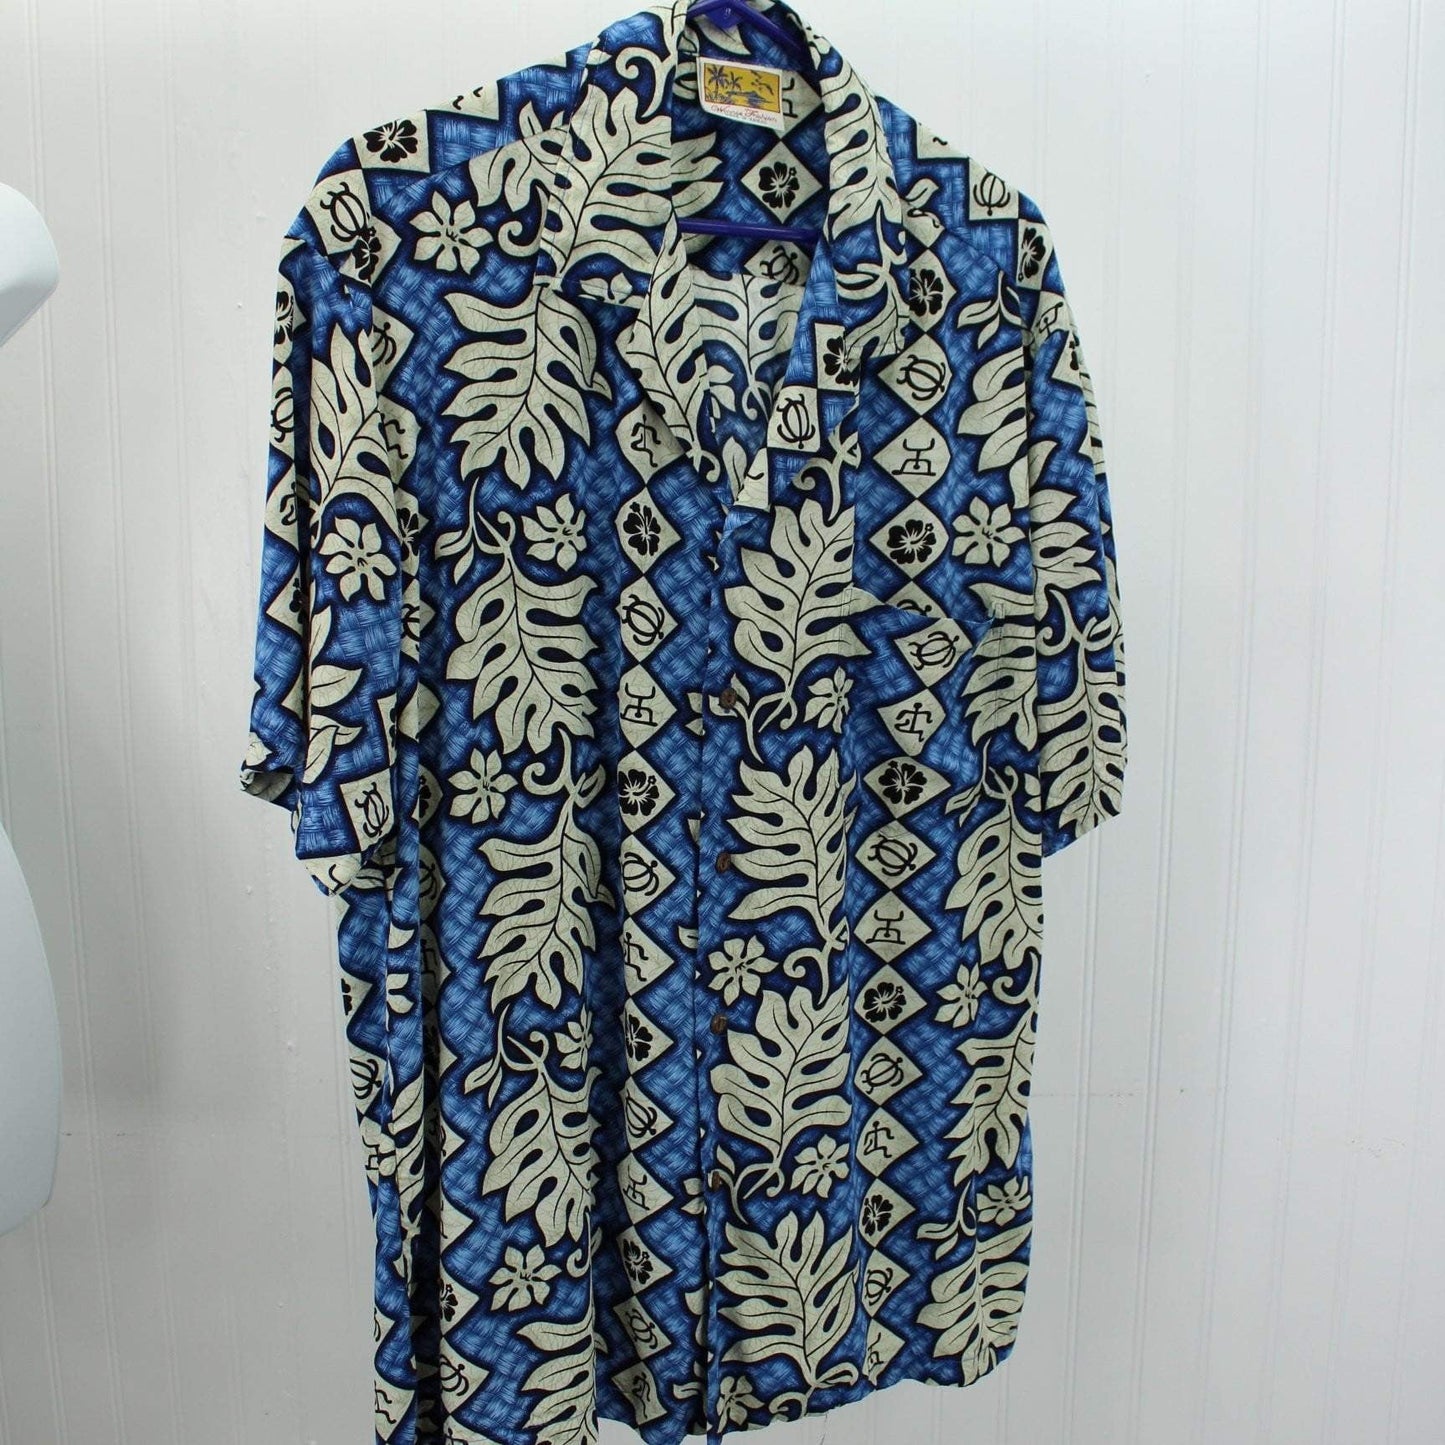 Vintage Hawaiian Shirt - Winnie Fashion Rayon - Blue White Leaves Flowers XL Symbols